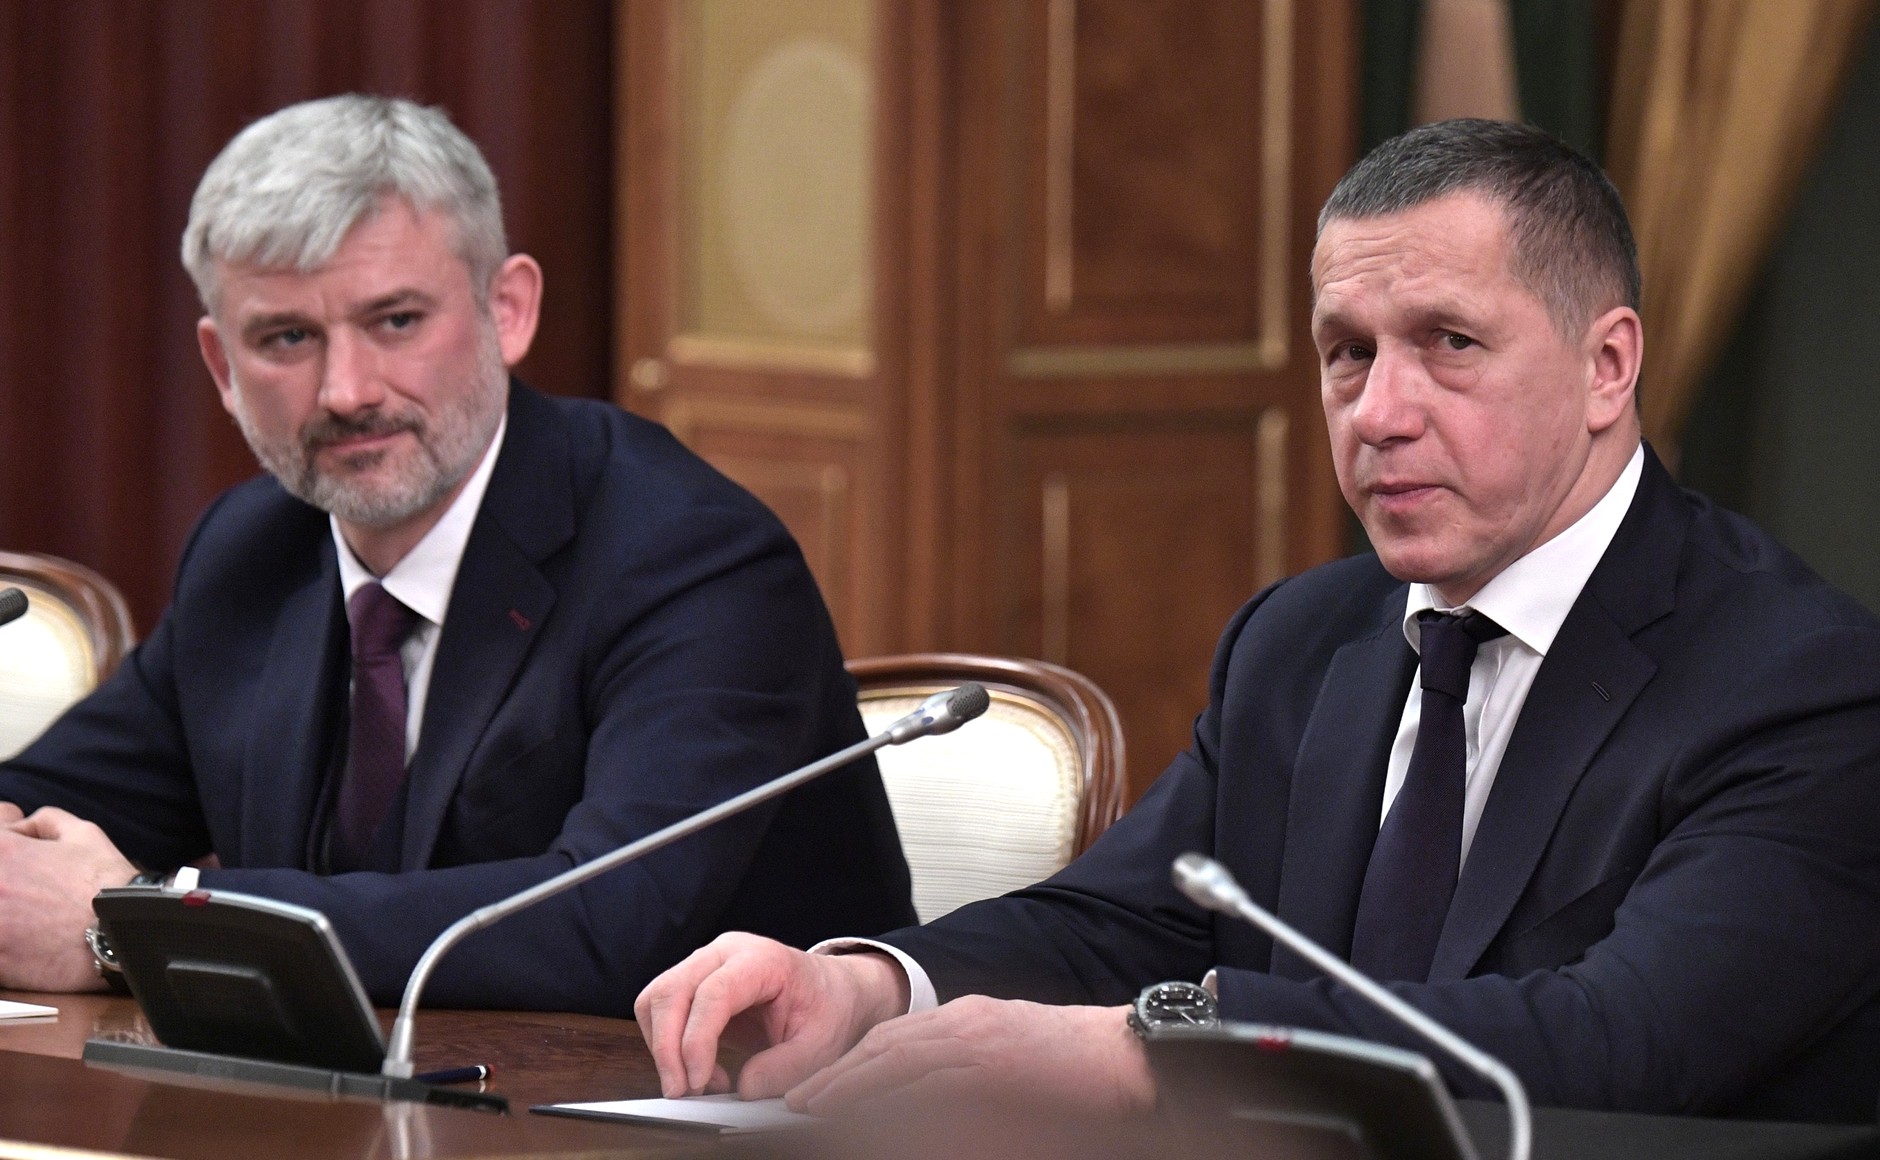 Евгений Дитрих (слева) и Юрий Трутнев перед началом встречи с членами правительства. 15.01.2020